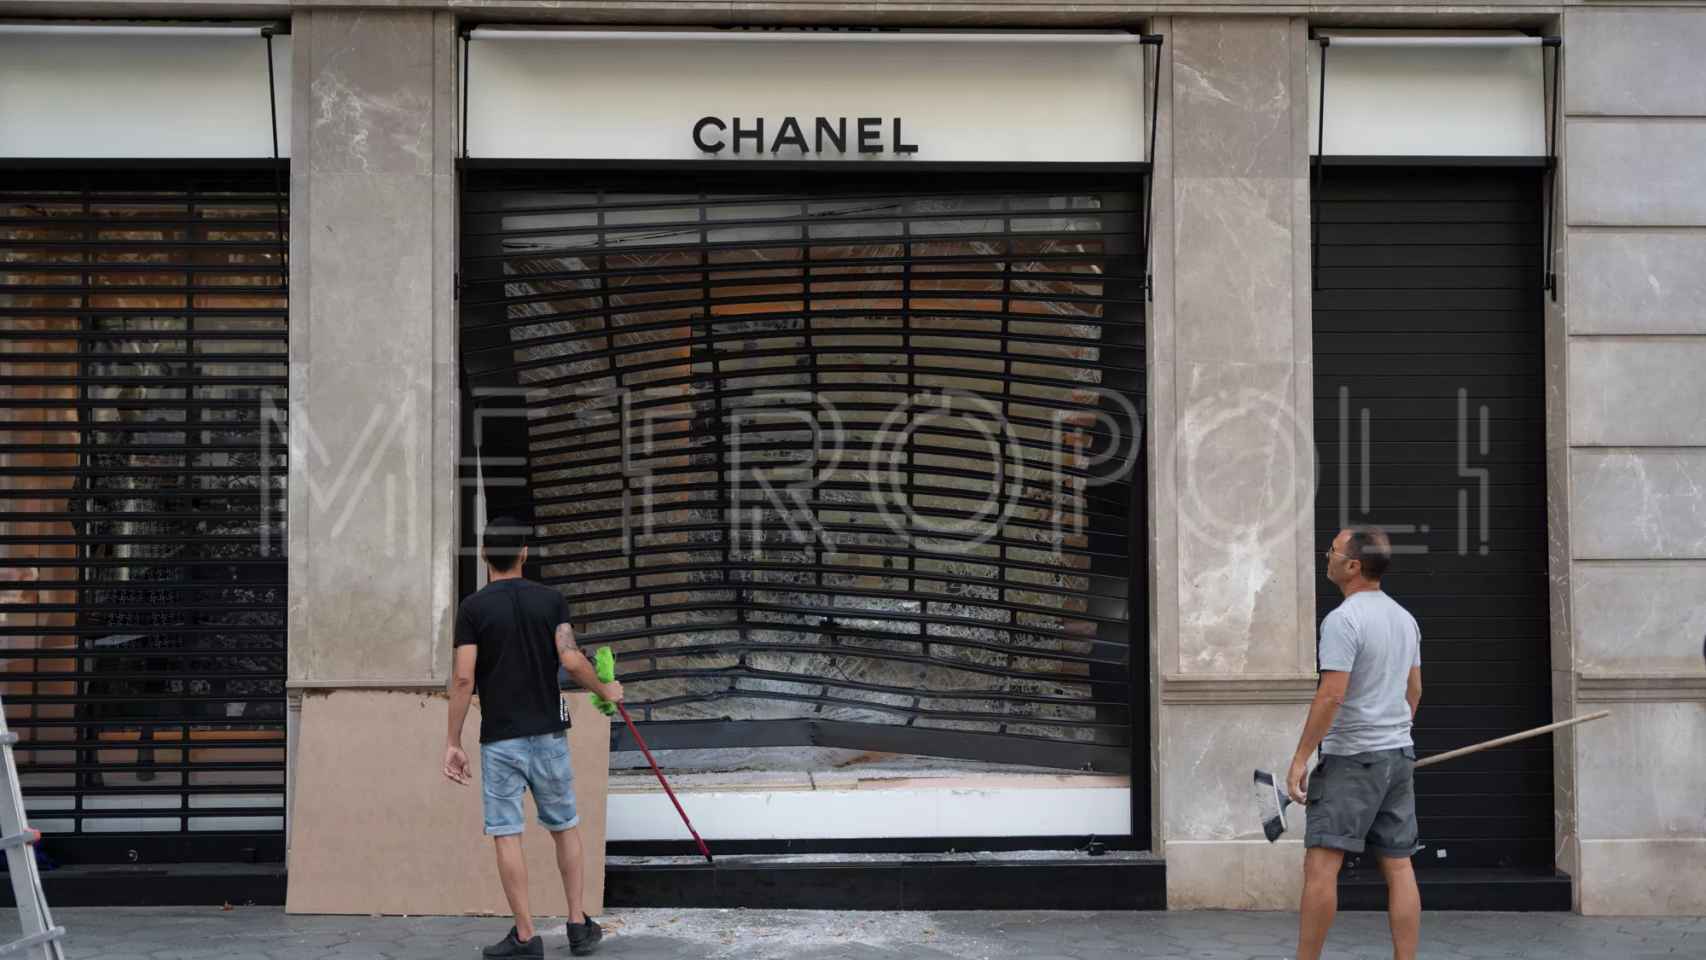 Robo por alunizaje en la tienda Chanel del paseo de Gràcia de Barcelona / LUIS MIGUEL AÑÓN